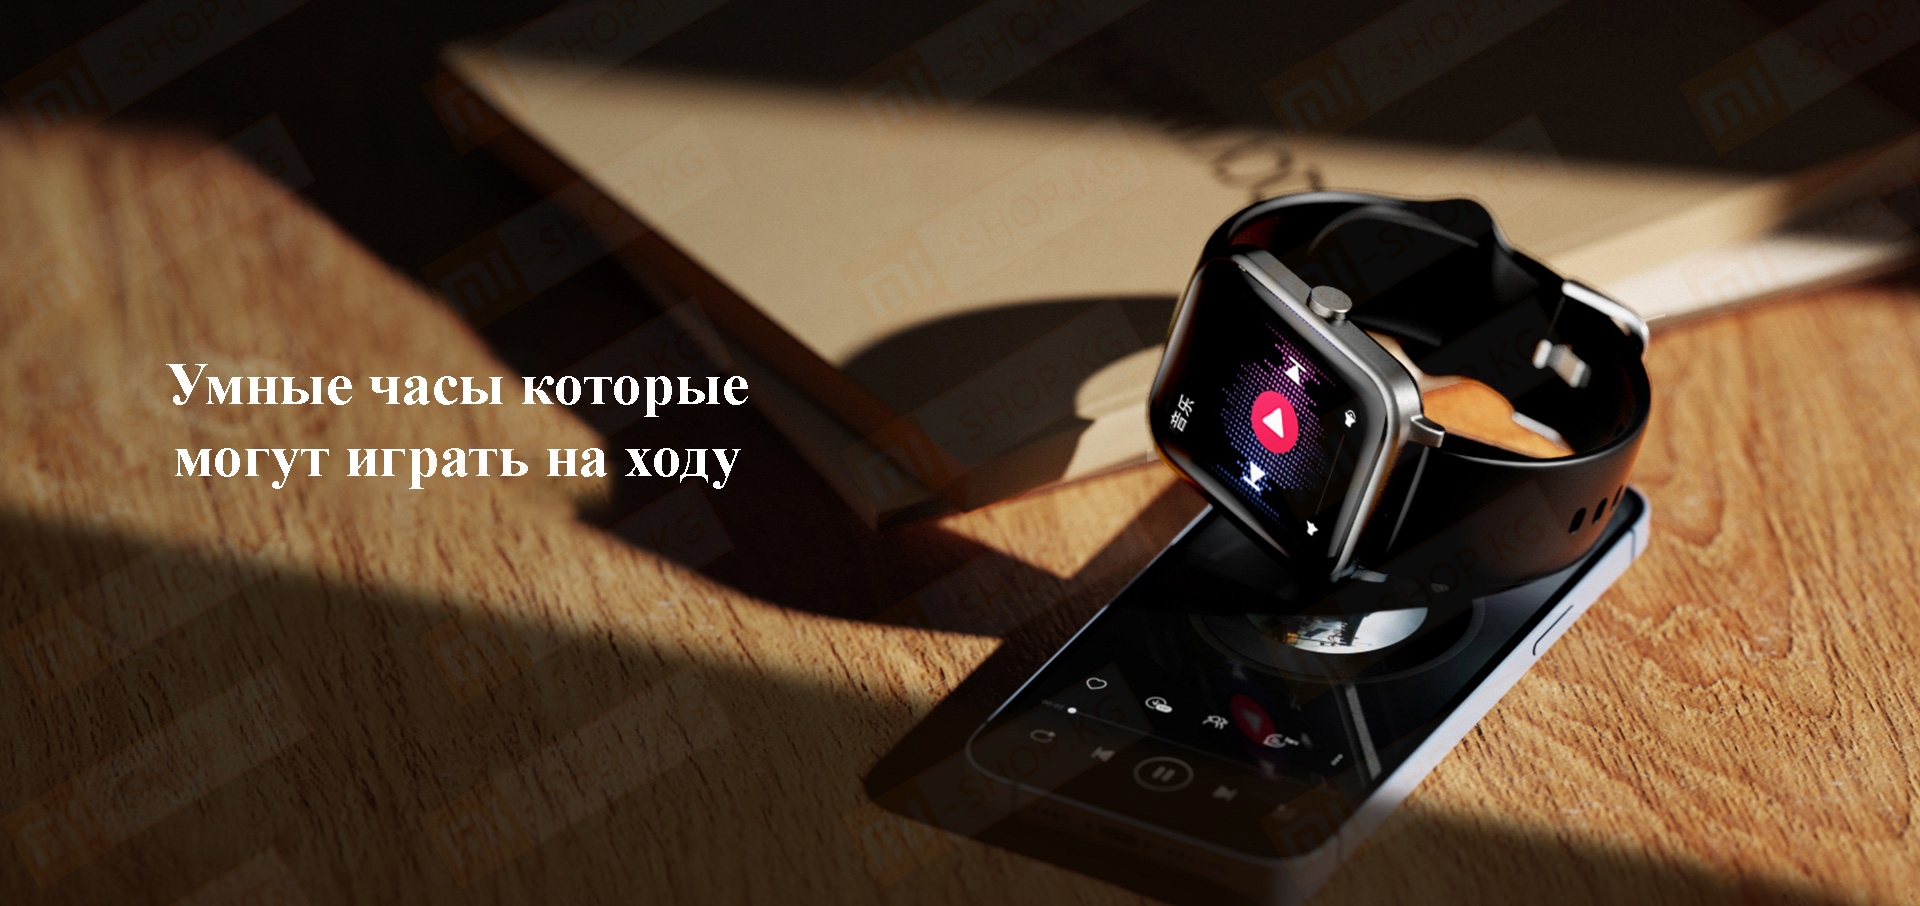 Умные часы Xiaomi QCY GTS Watch